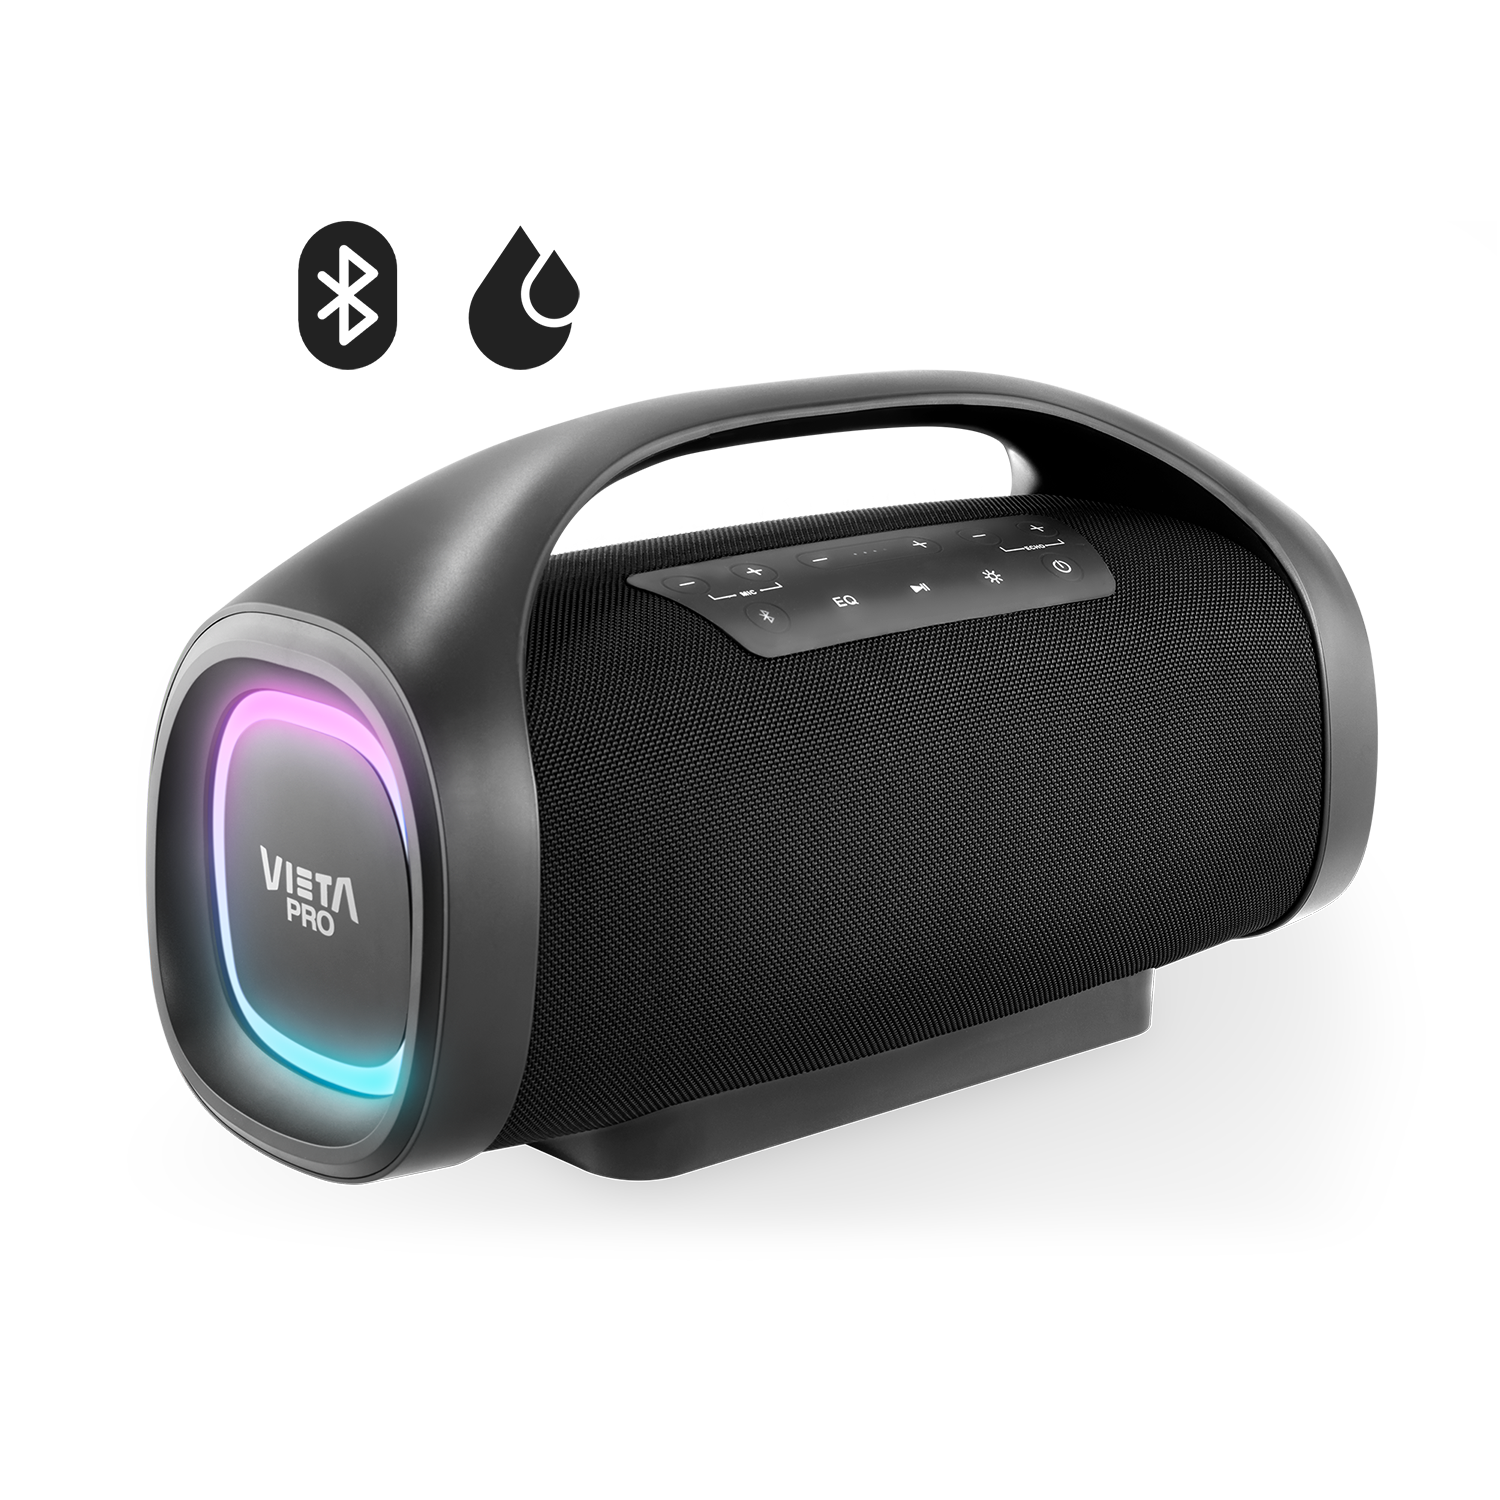 Altavoz Easy 2 de Vieta Pro, con Bluetooth 5.0, True Wireless, Micrófono,  Radio FM, 12 horas de autonomía, Resistencia al agua IPX7 y botón directo  al asistente virtual